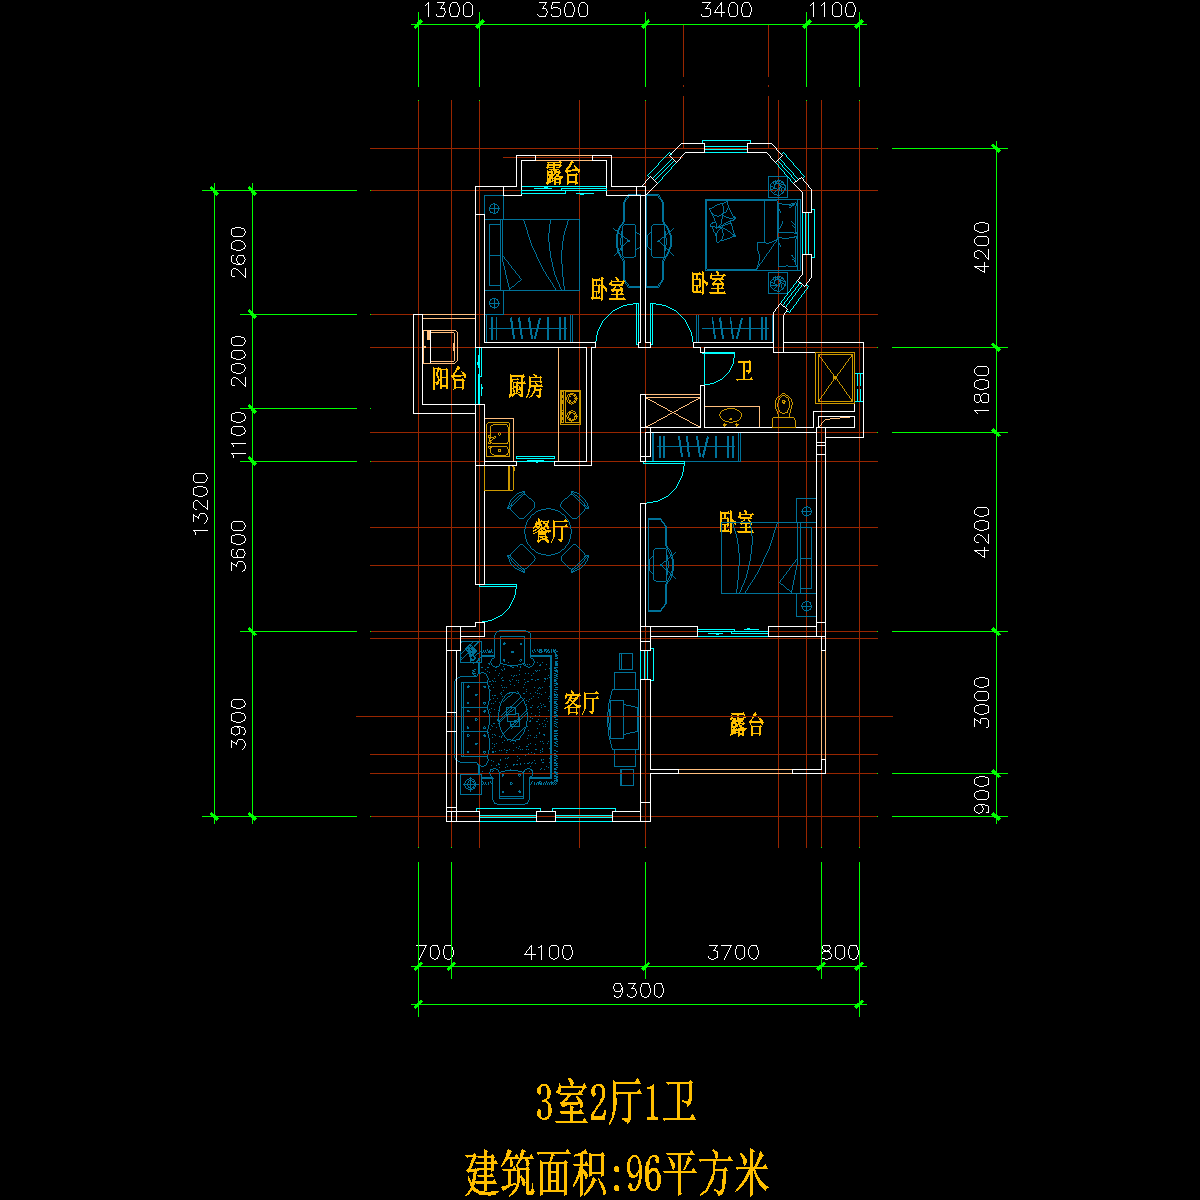 板式多层单户三室二厅一卫户型CAD图纸(96)